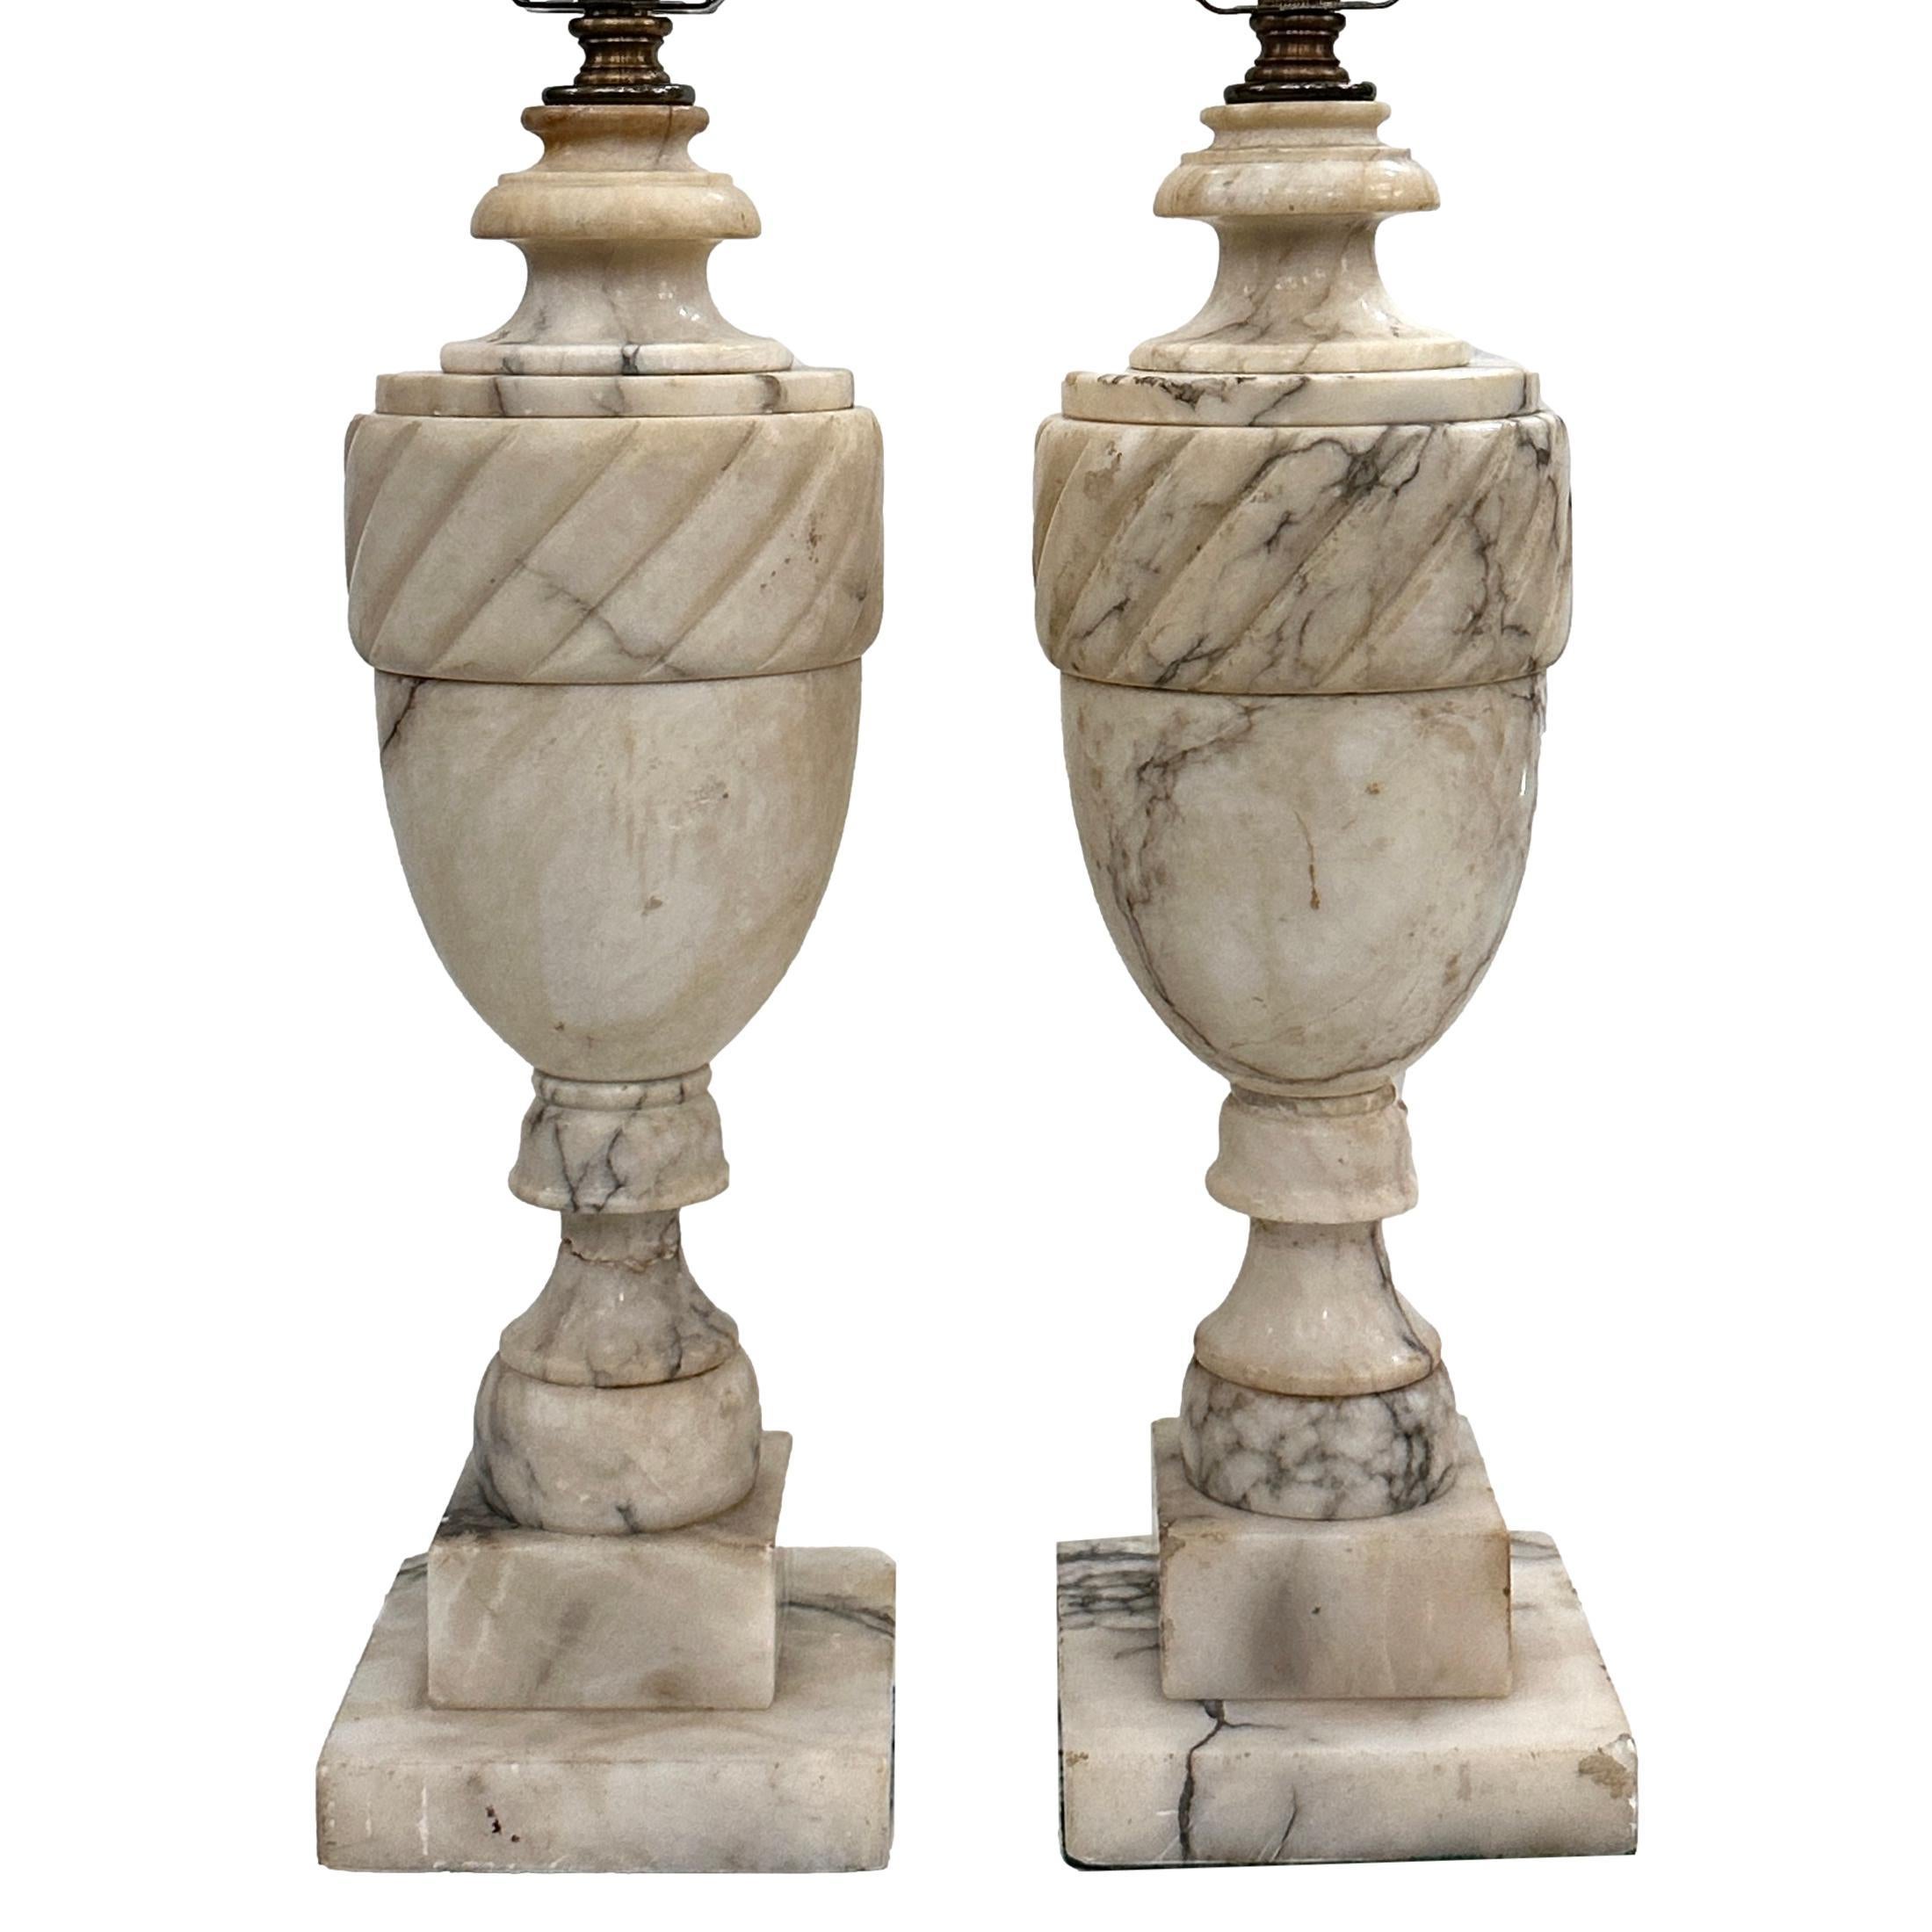 Paire de lampes de table en albâtre sculpté italiennes des années 1920 avec base à piédestal.

Mesures :
Hauteur du corps : 15
Hauteur jusqu'à l'appui de l'abat-jour : 24